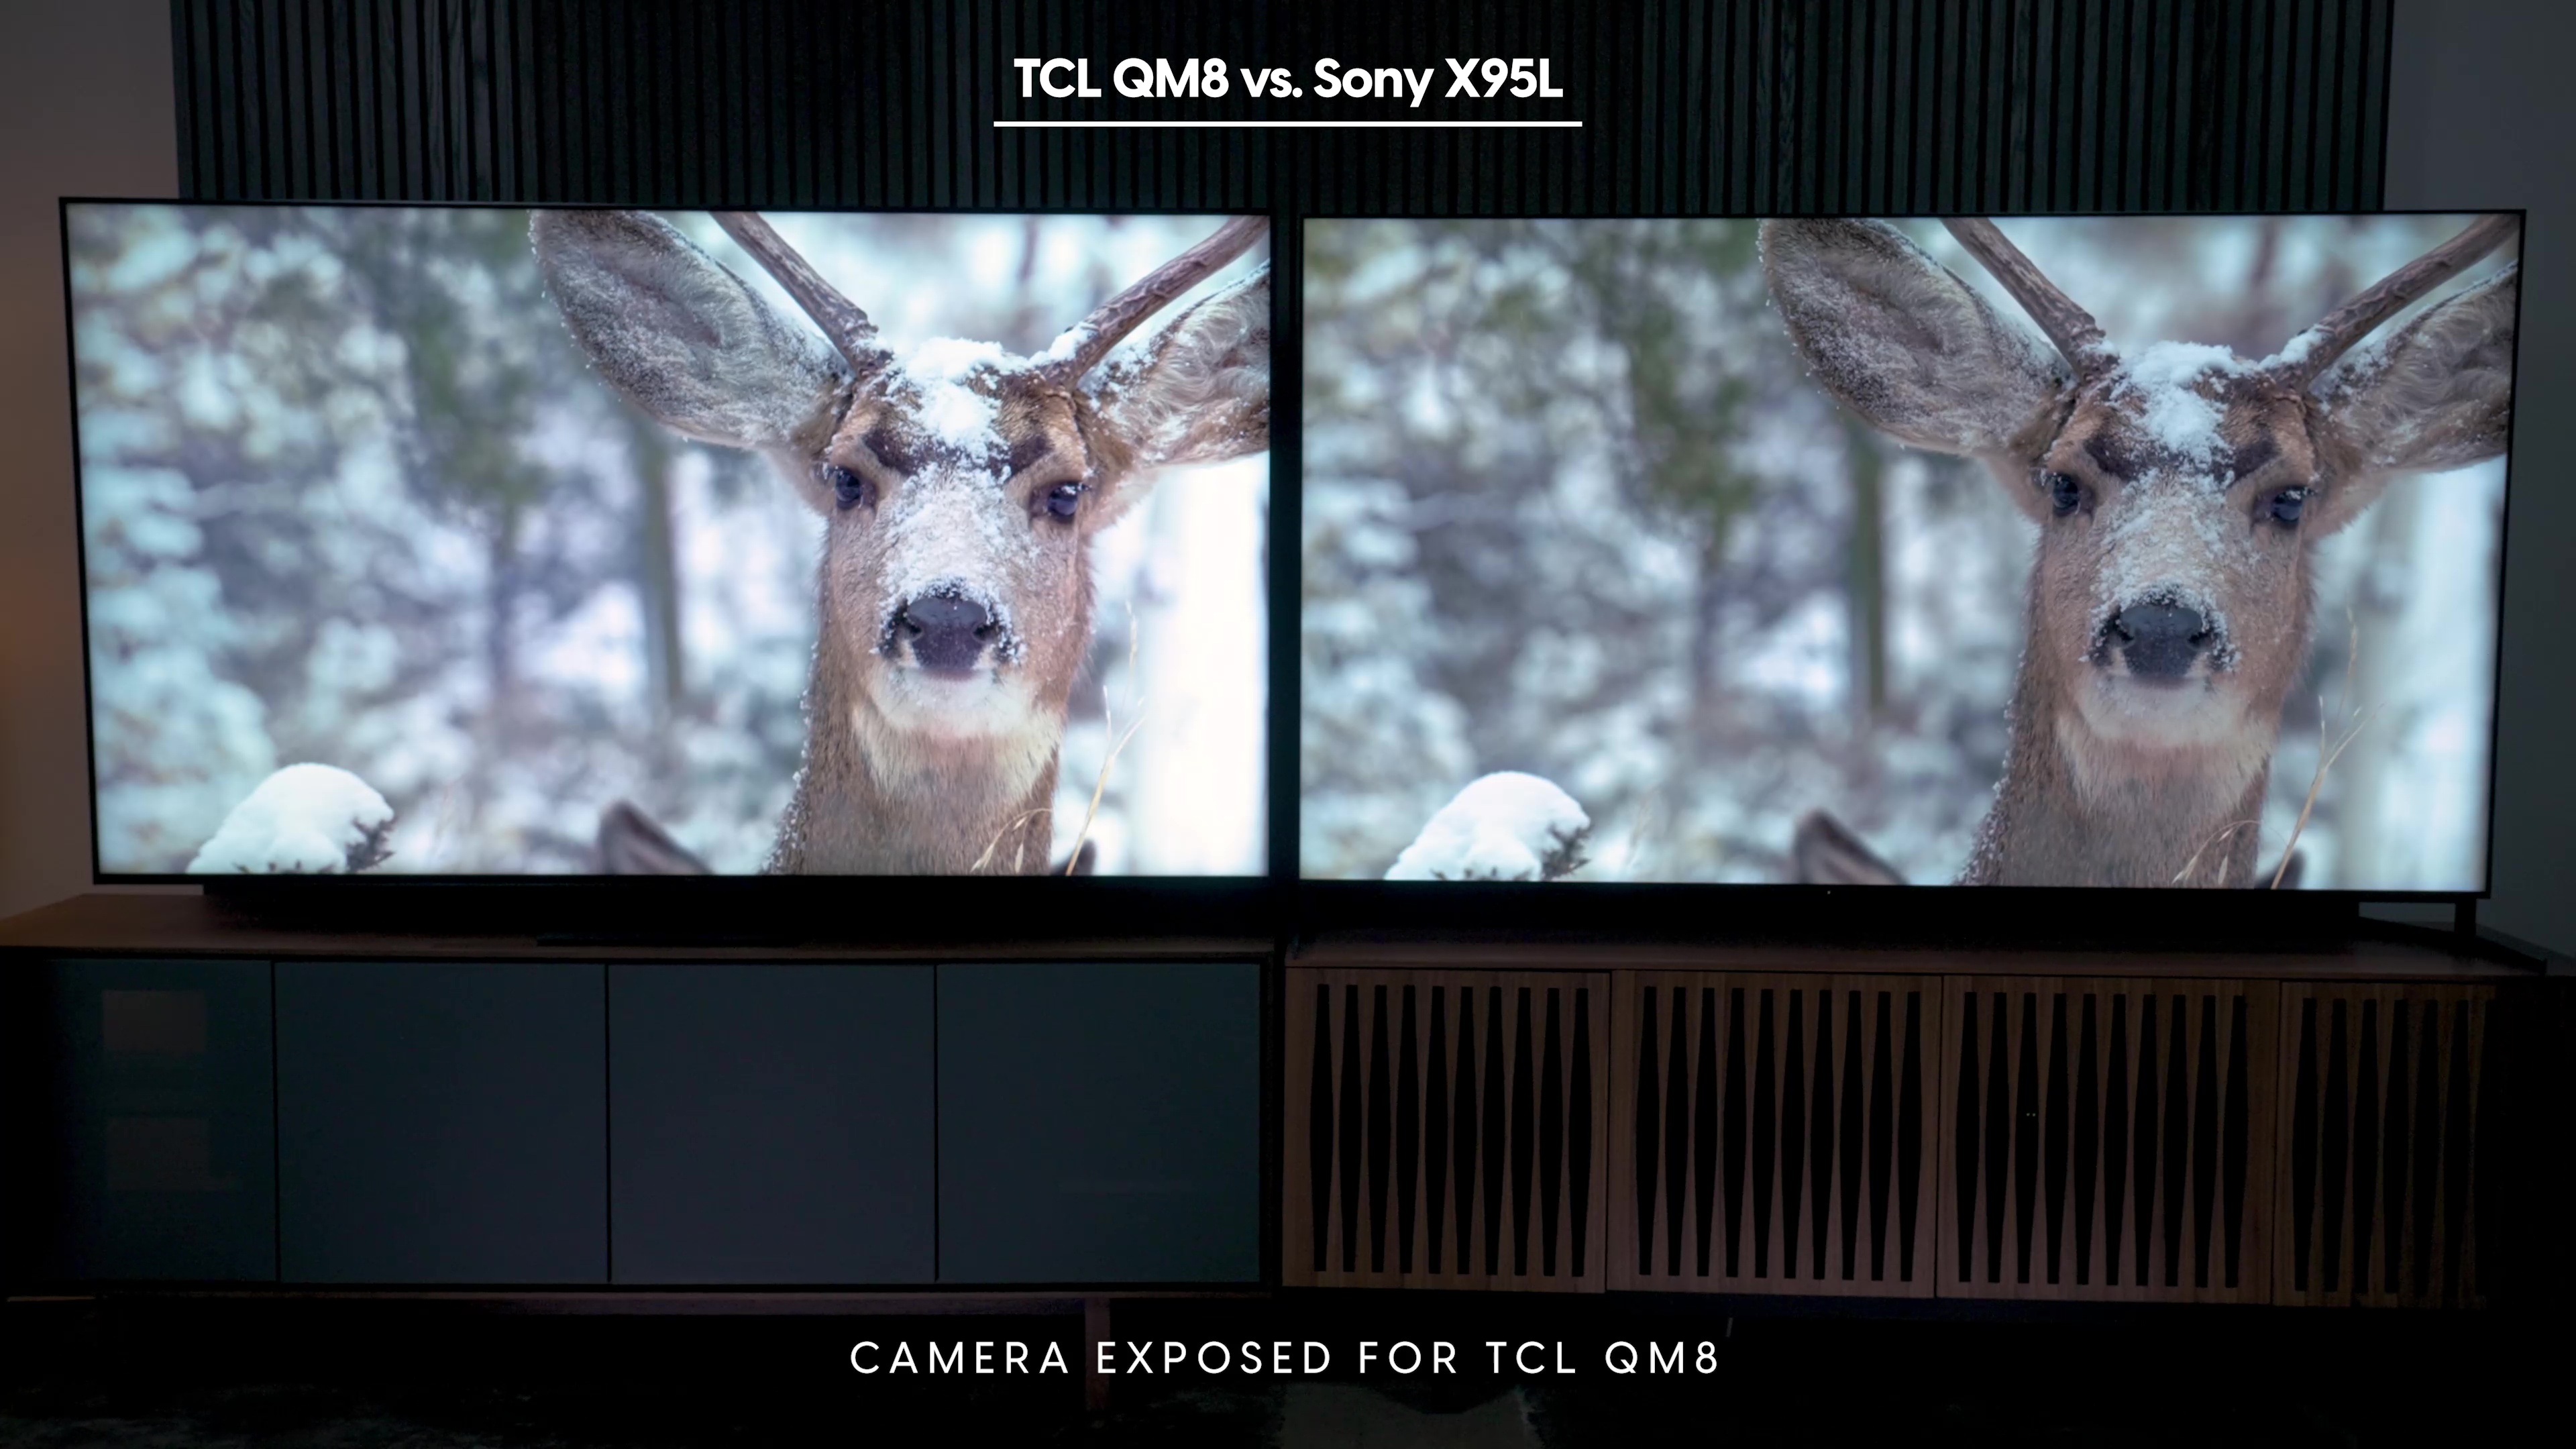 Comparação lado a lado de uma cena de um cervo na neve em um Sony Bravia X95L vs TCL QM8.